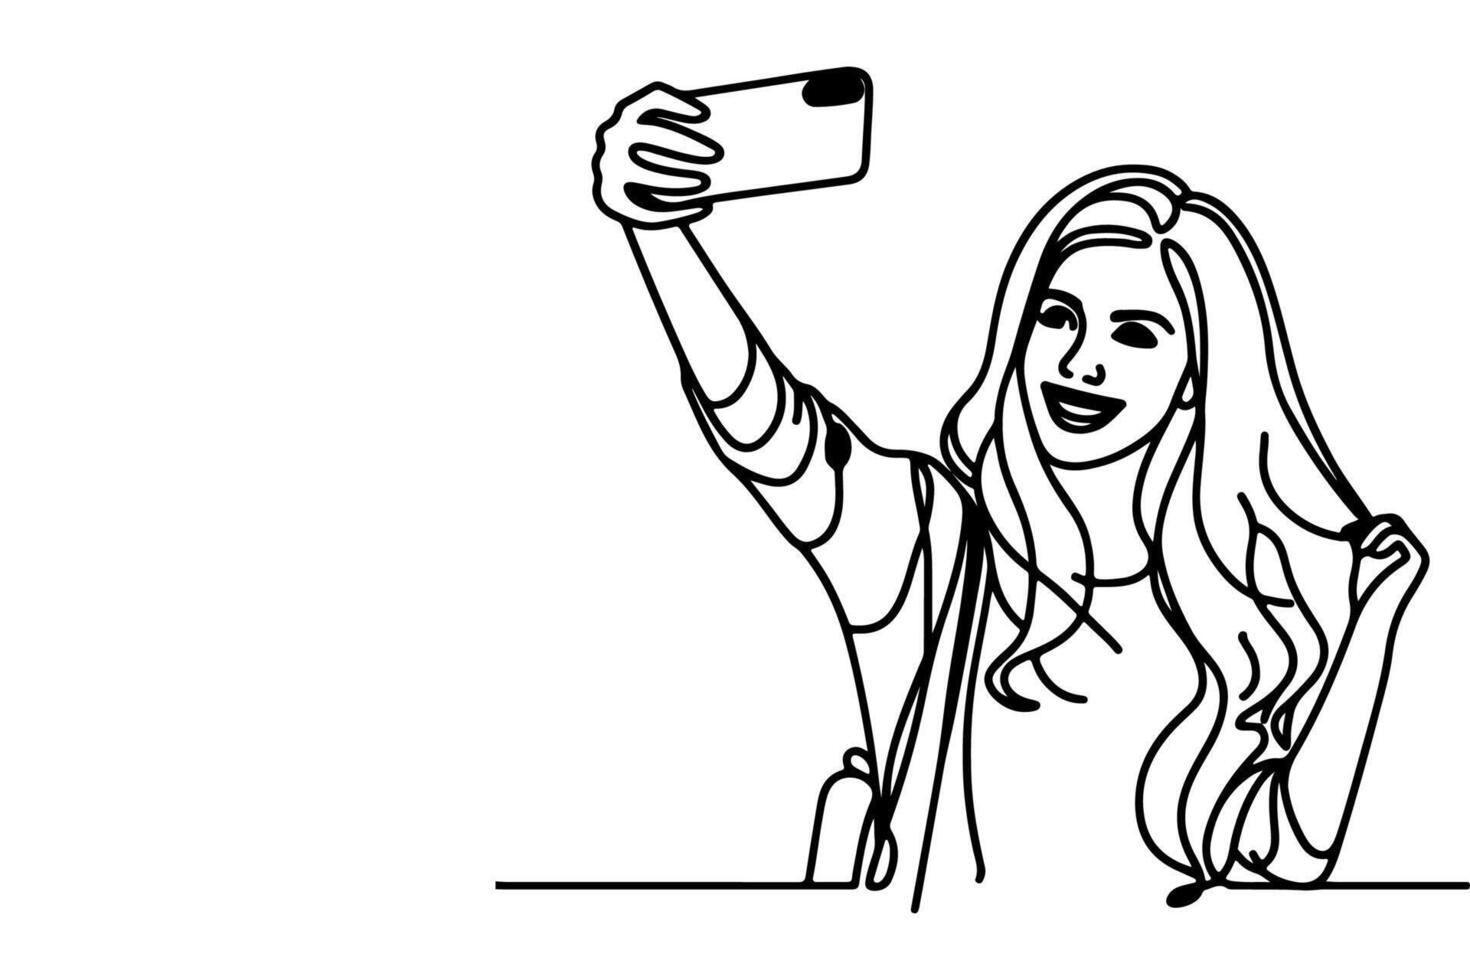 doorlopend een zwart lijn kunst tekening vrolijk jong meisje Holding smartphone naar nemen acteren selfie of video telefoontje door mobiel telefoon schets tekening vector familie reizen concept